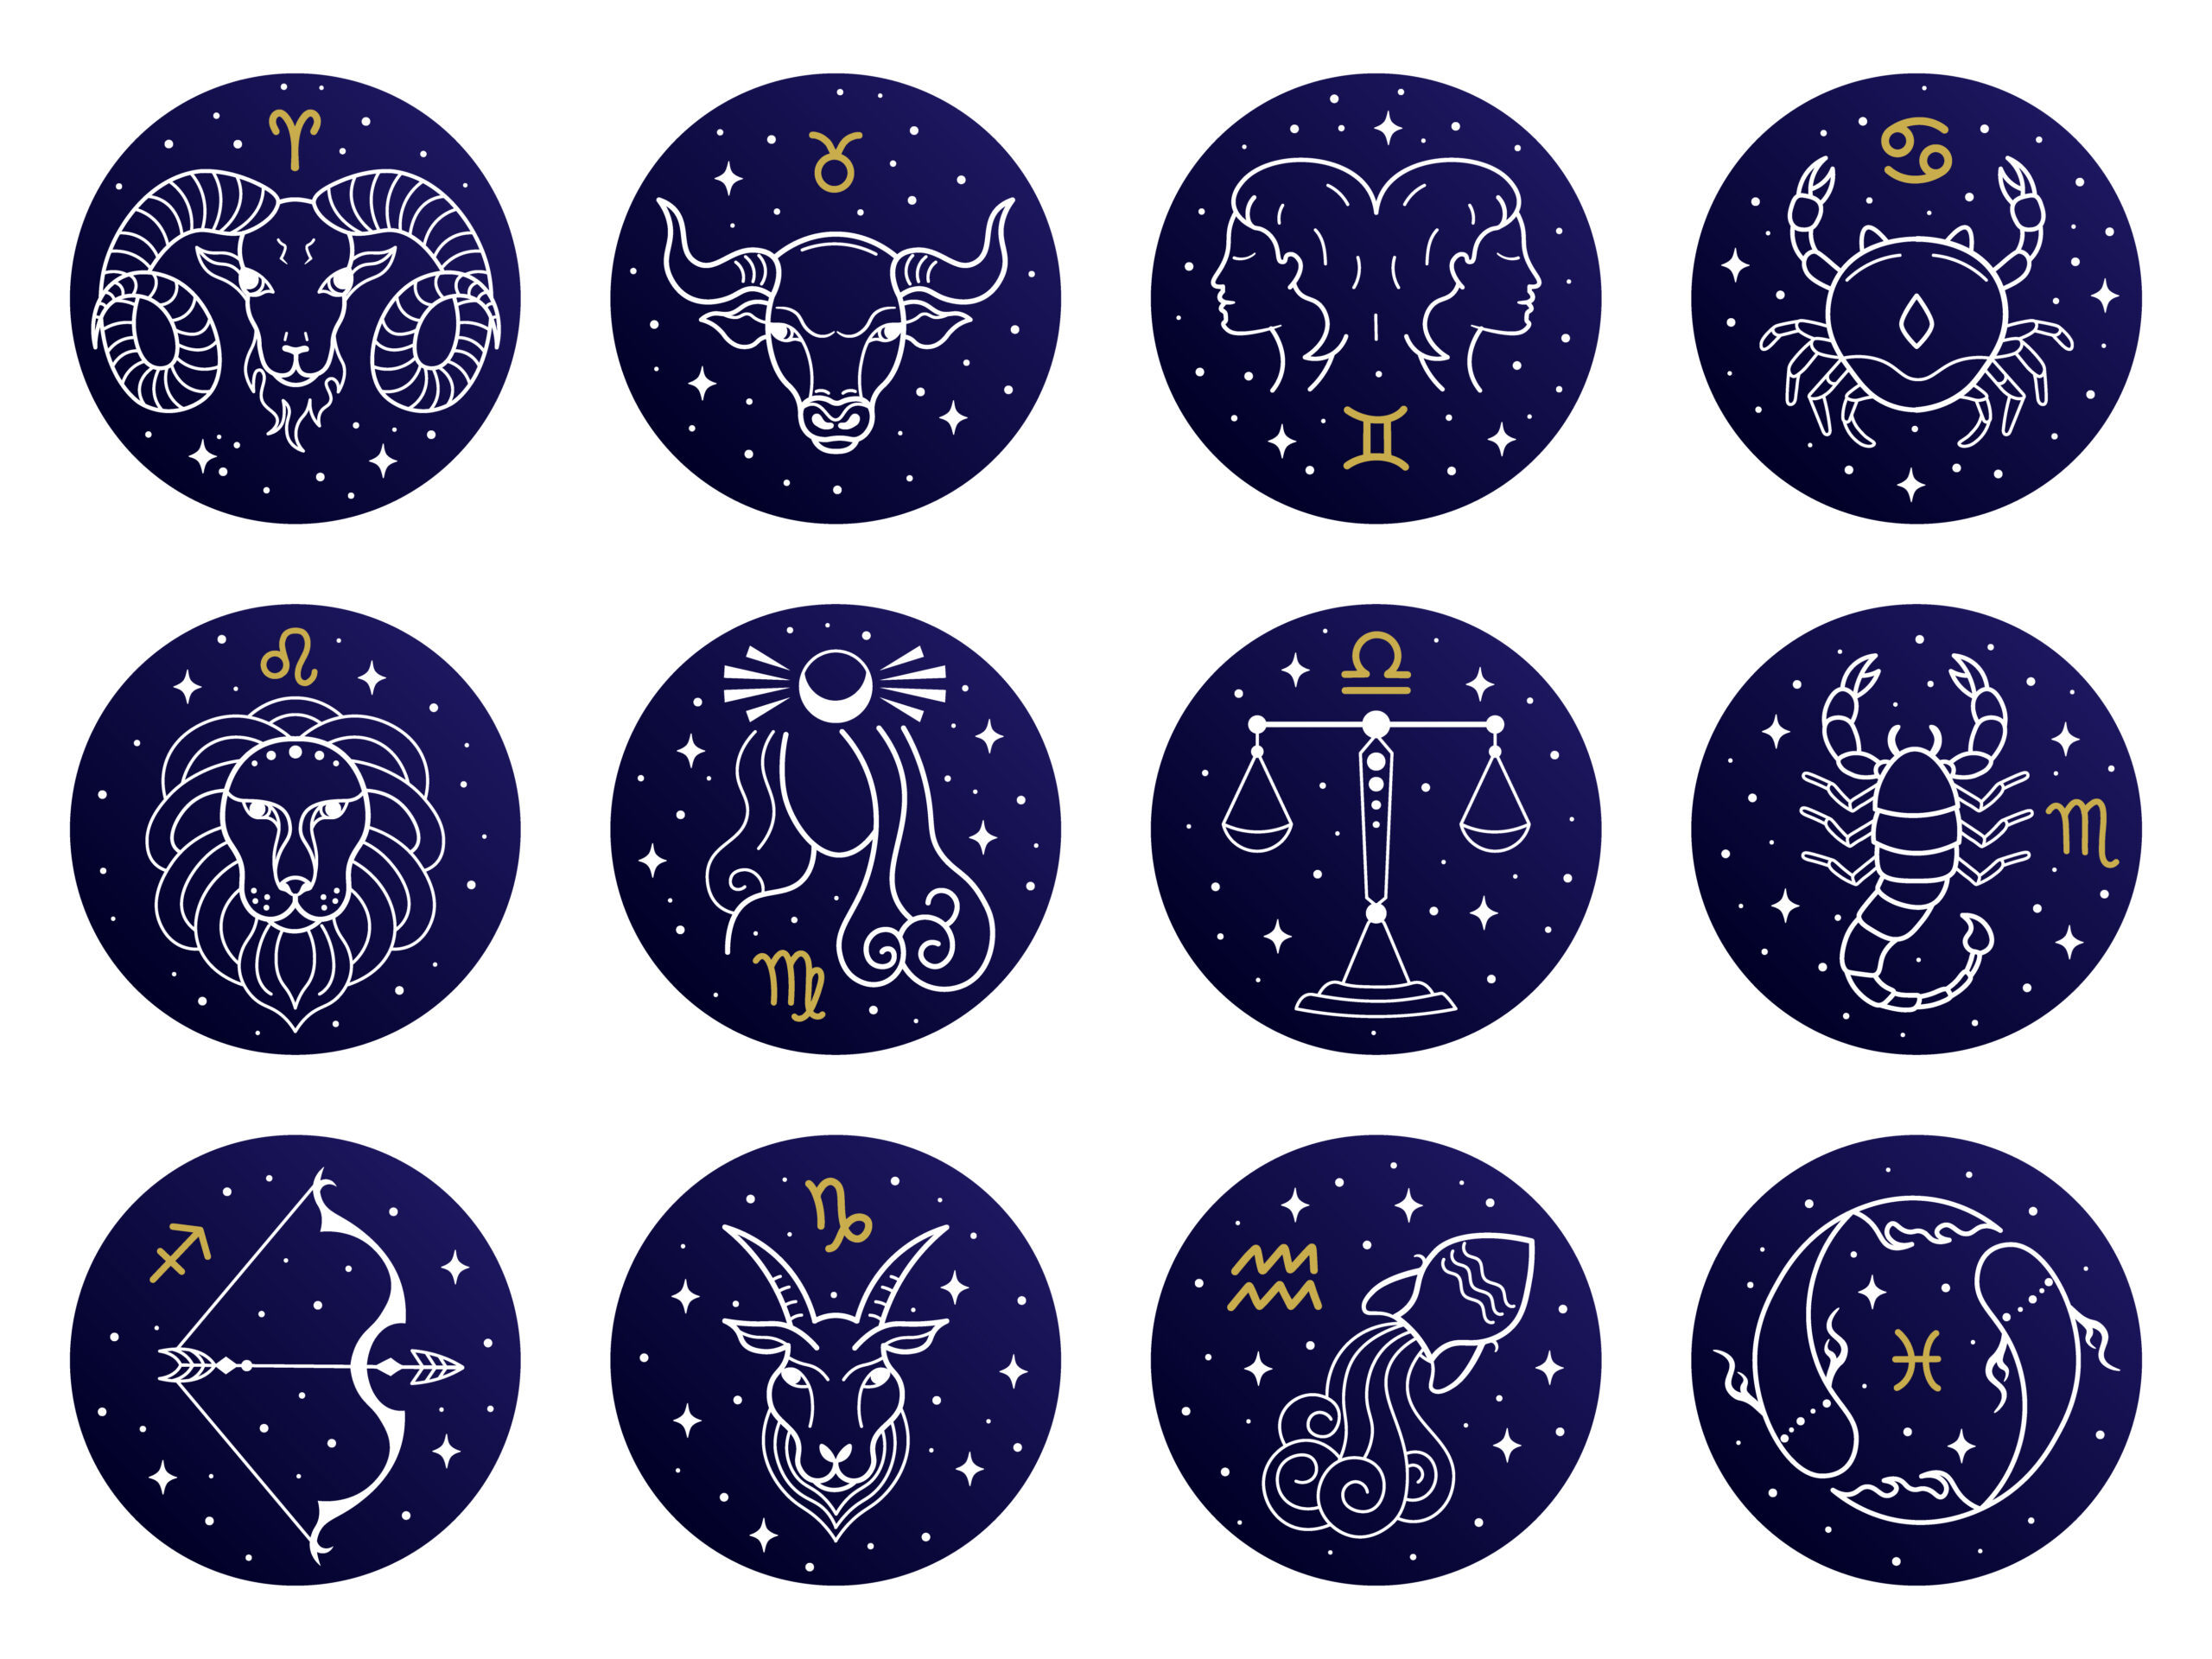 Signification de l’astrologie : des temps anciens à l’apogée moderne